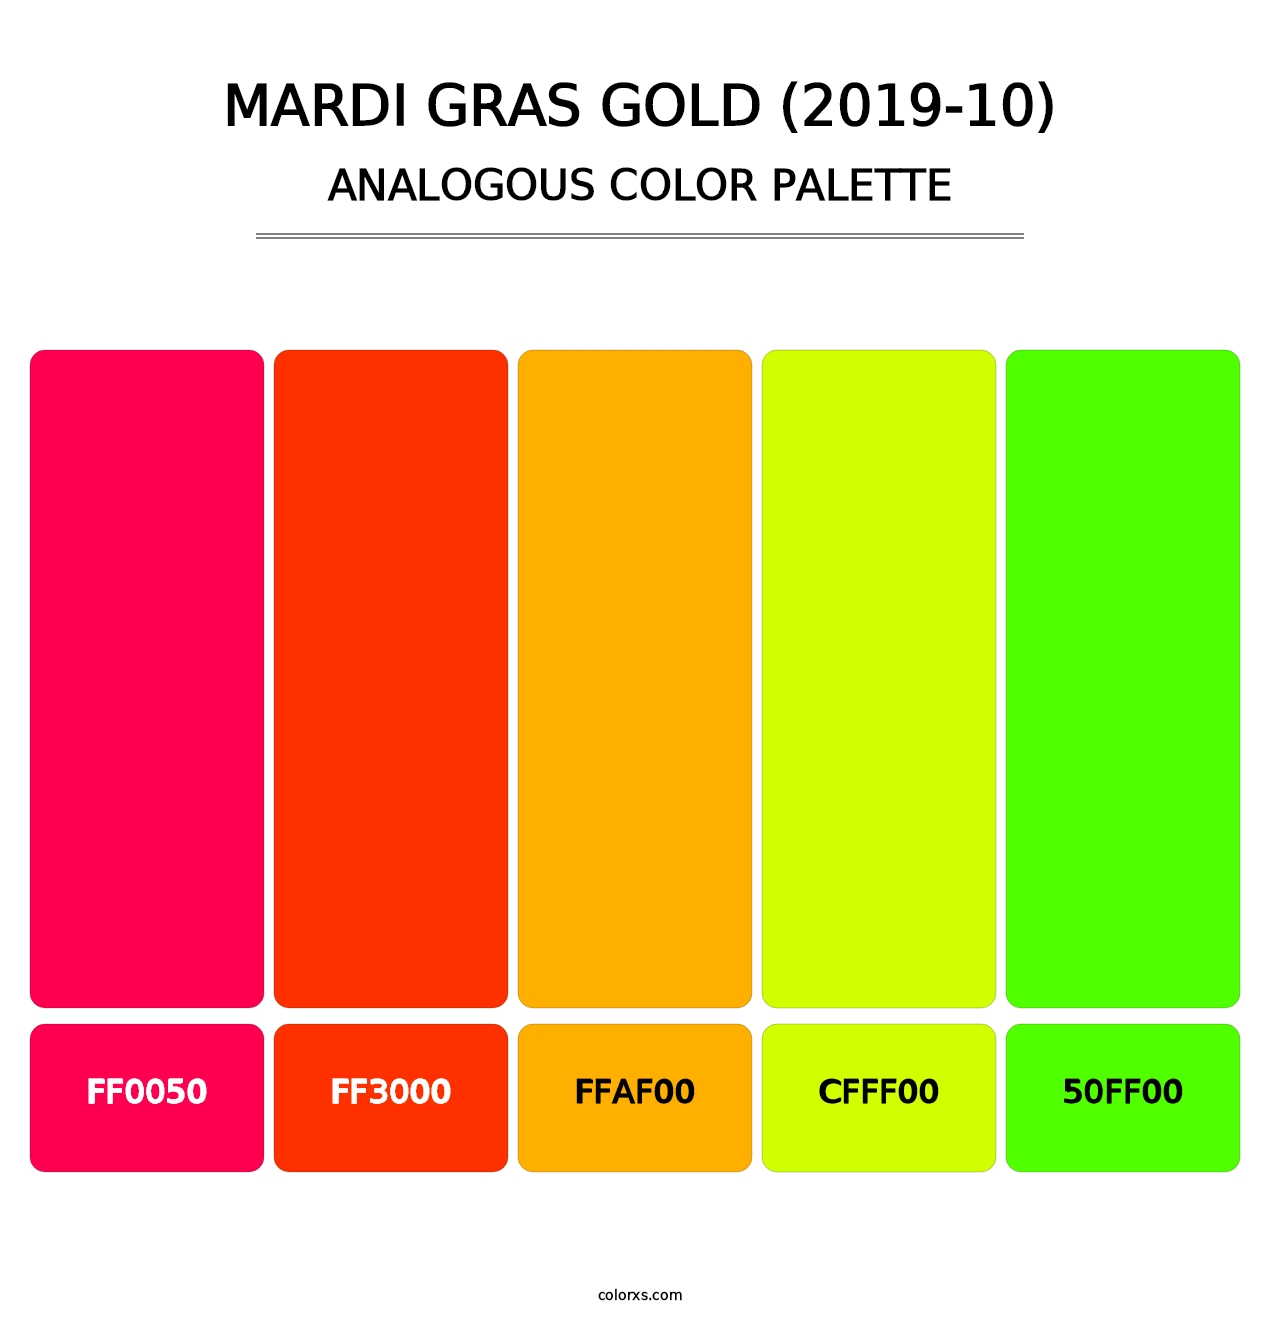 Mardi Gras Gold (2019-10) - Analogous Color Palette